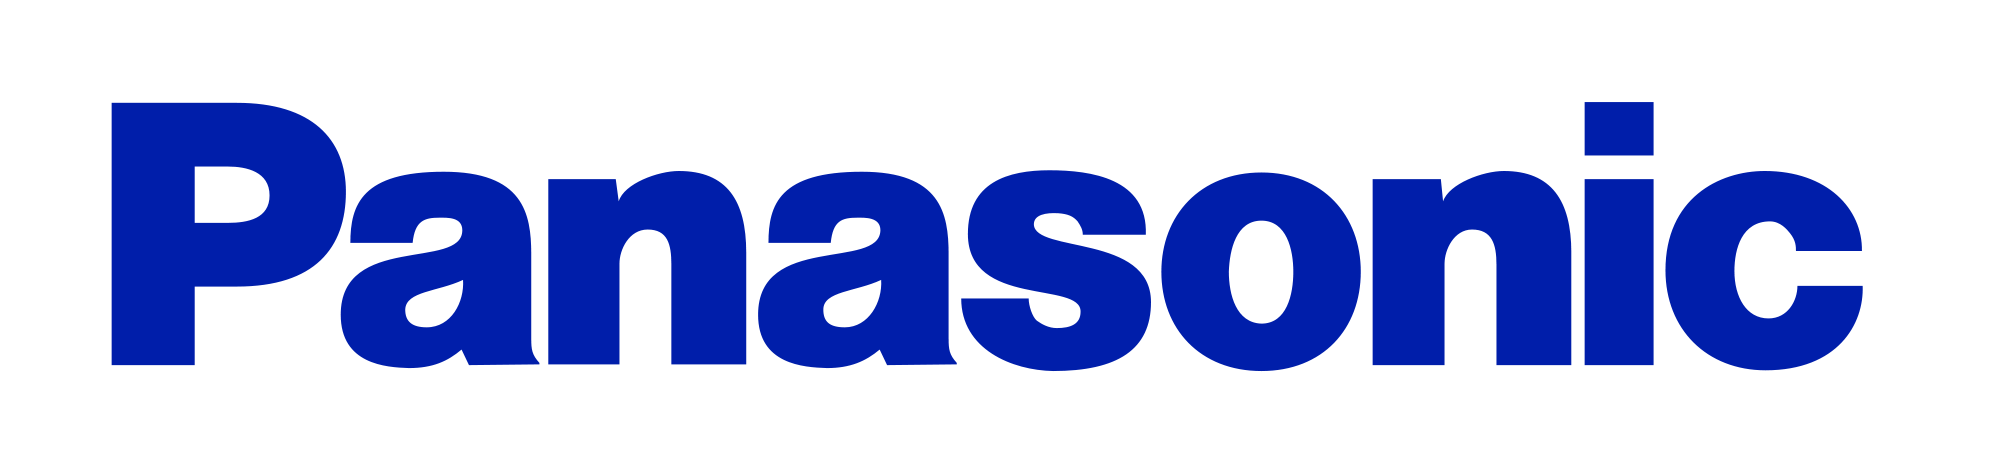 Slika za proizvajalca Panasonic